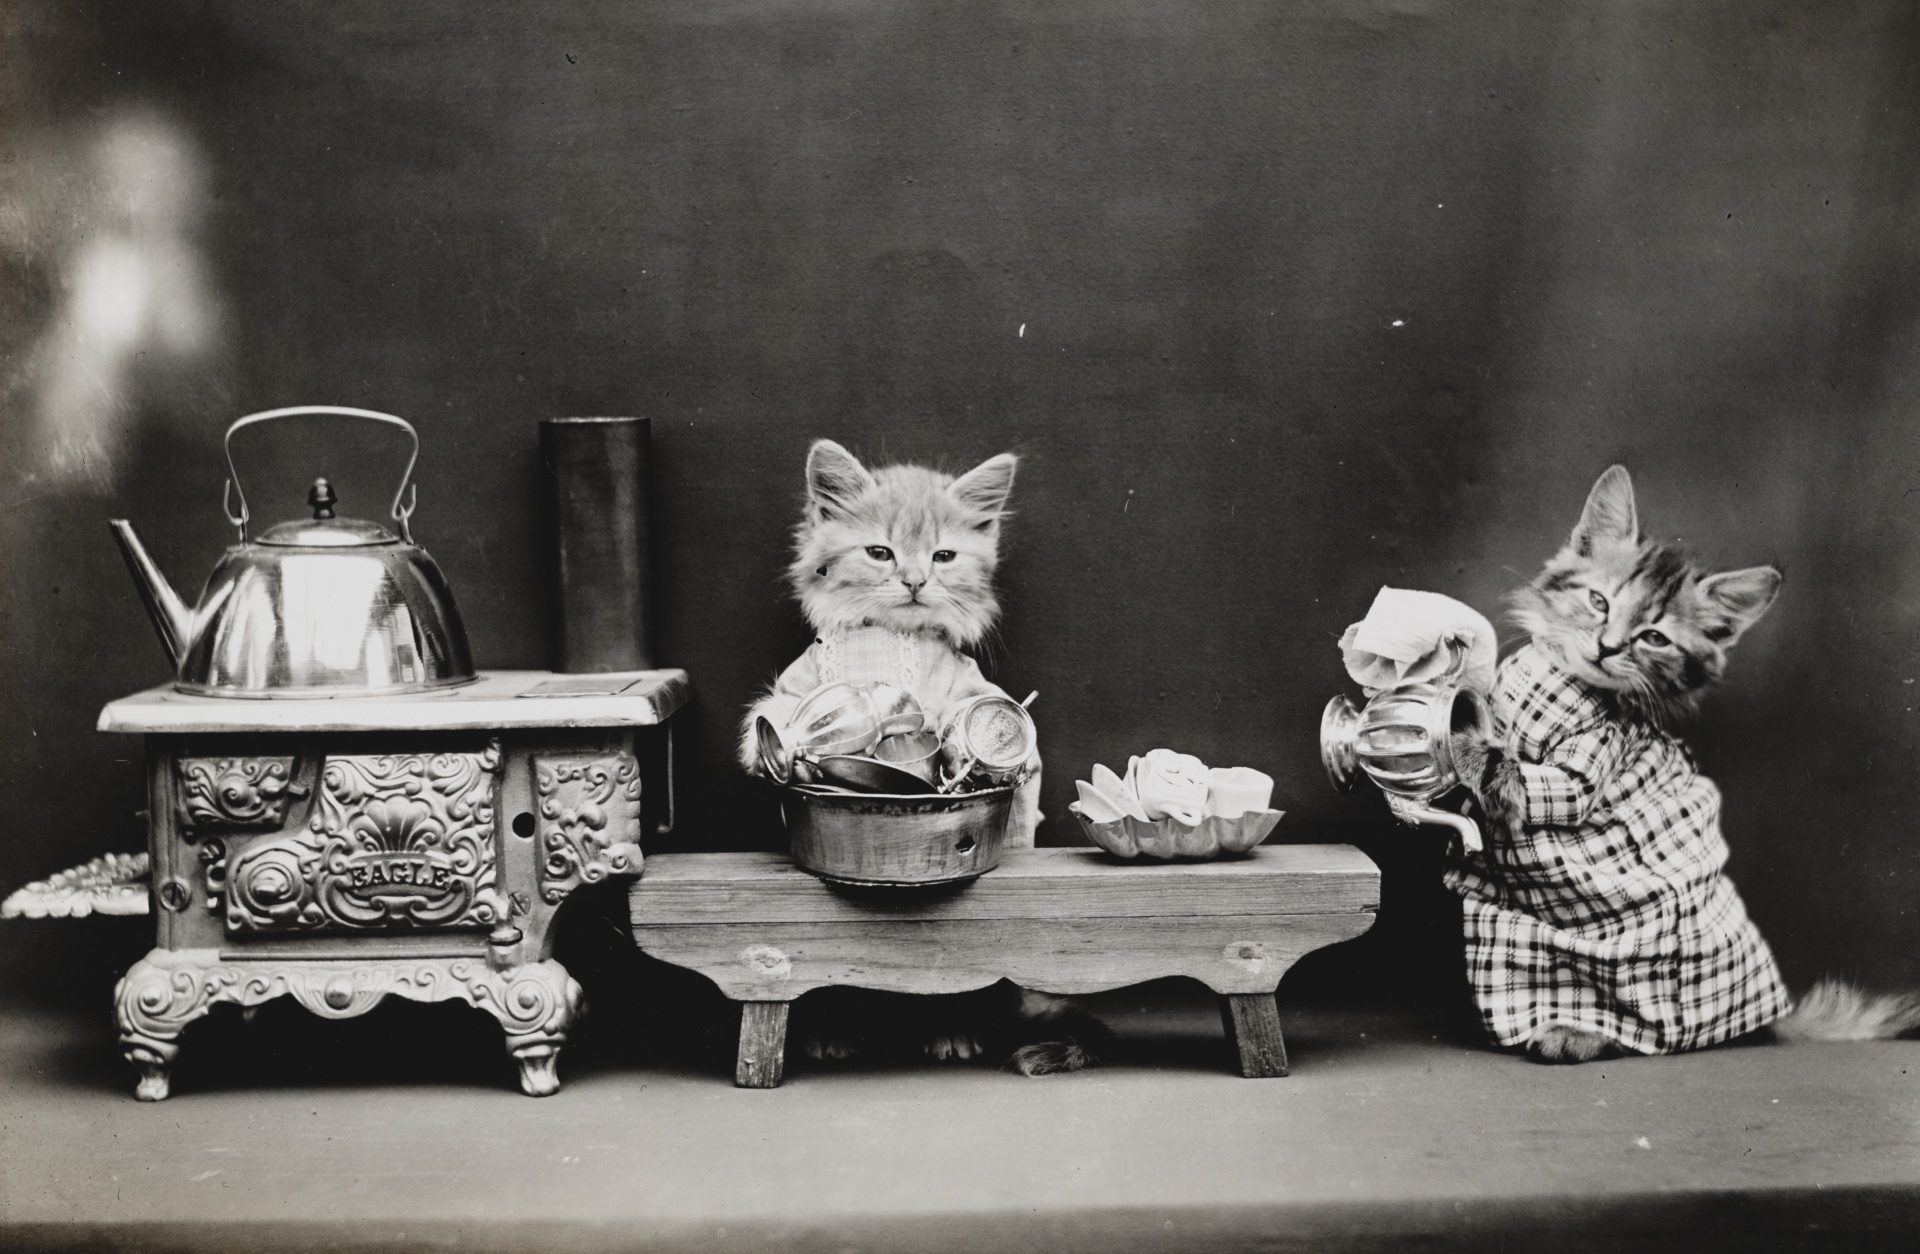 Gato vestido foto vintage